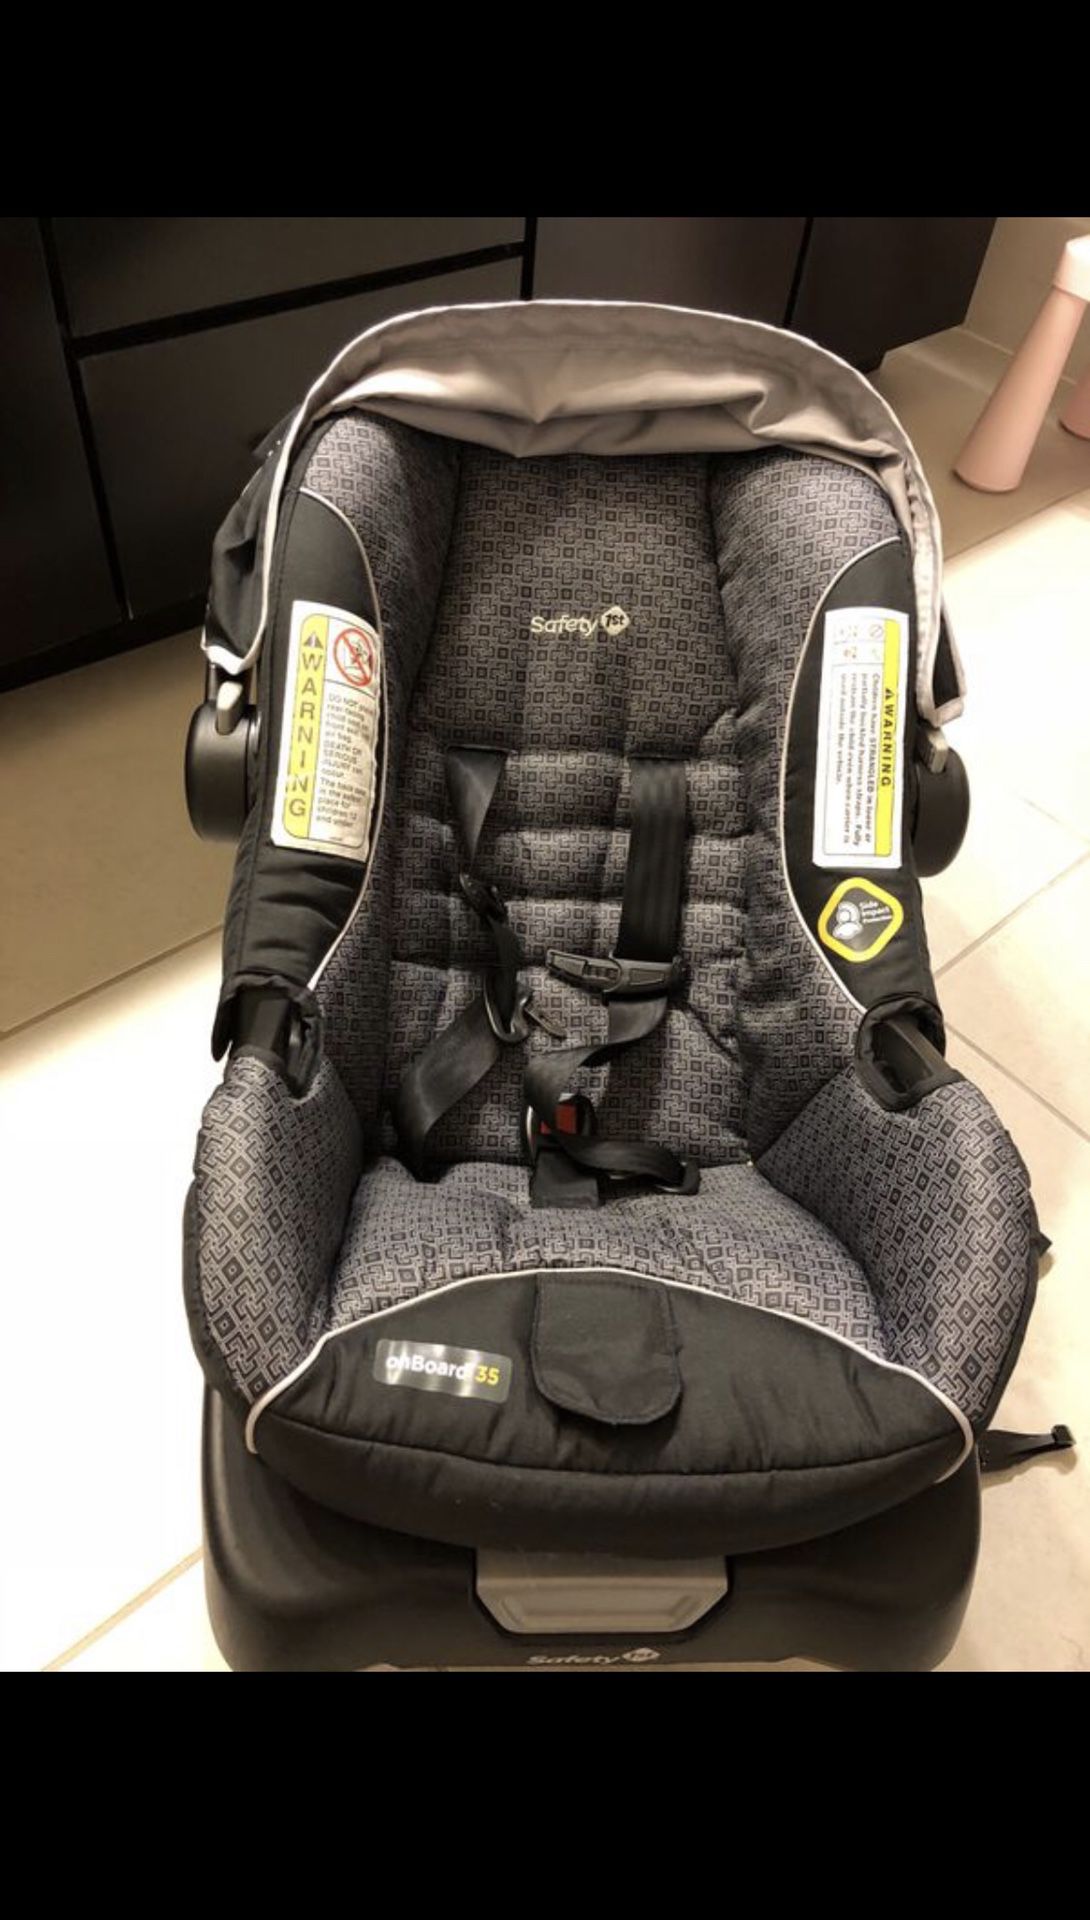 Safe 1st Infant Car Seat